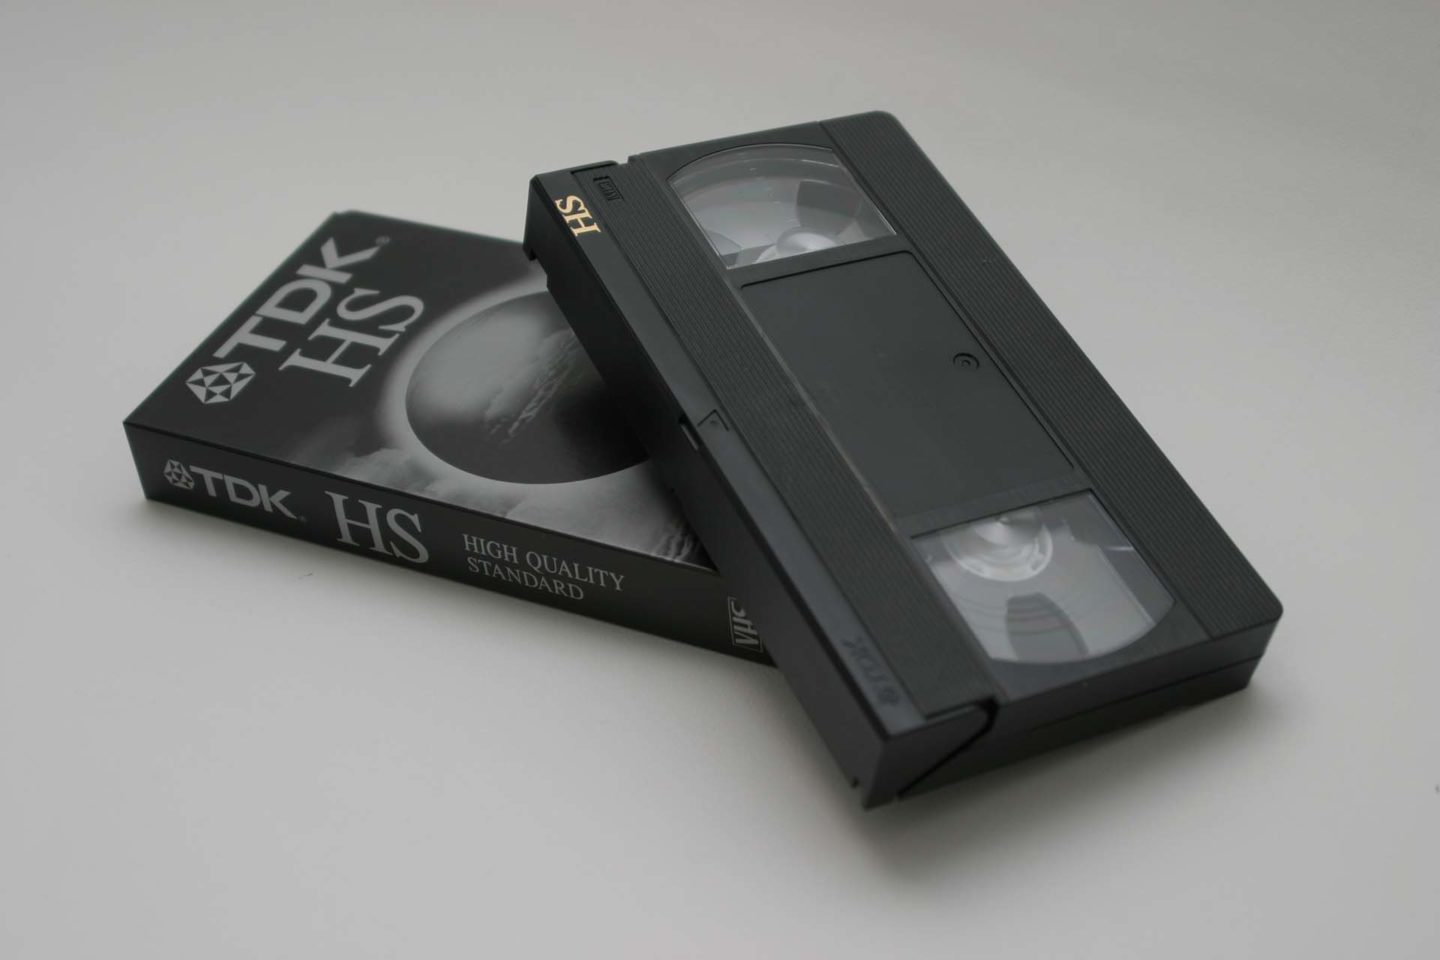 VHS casette